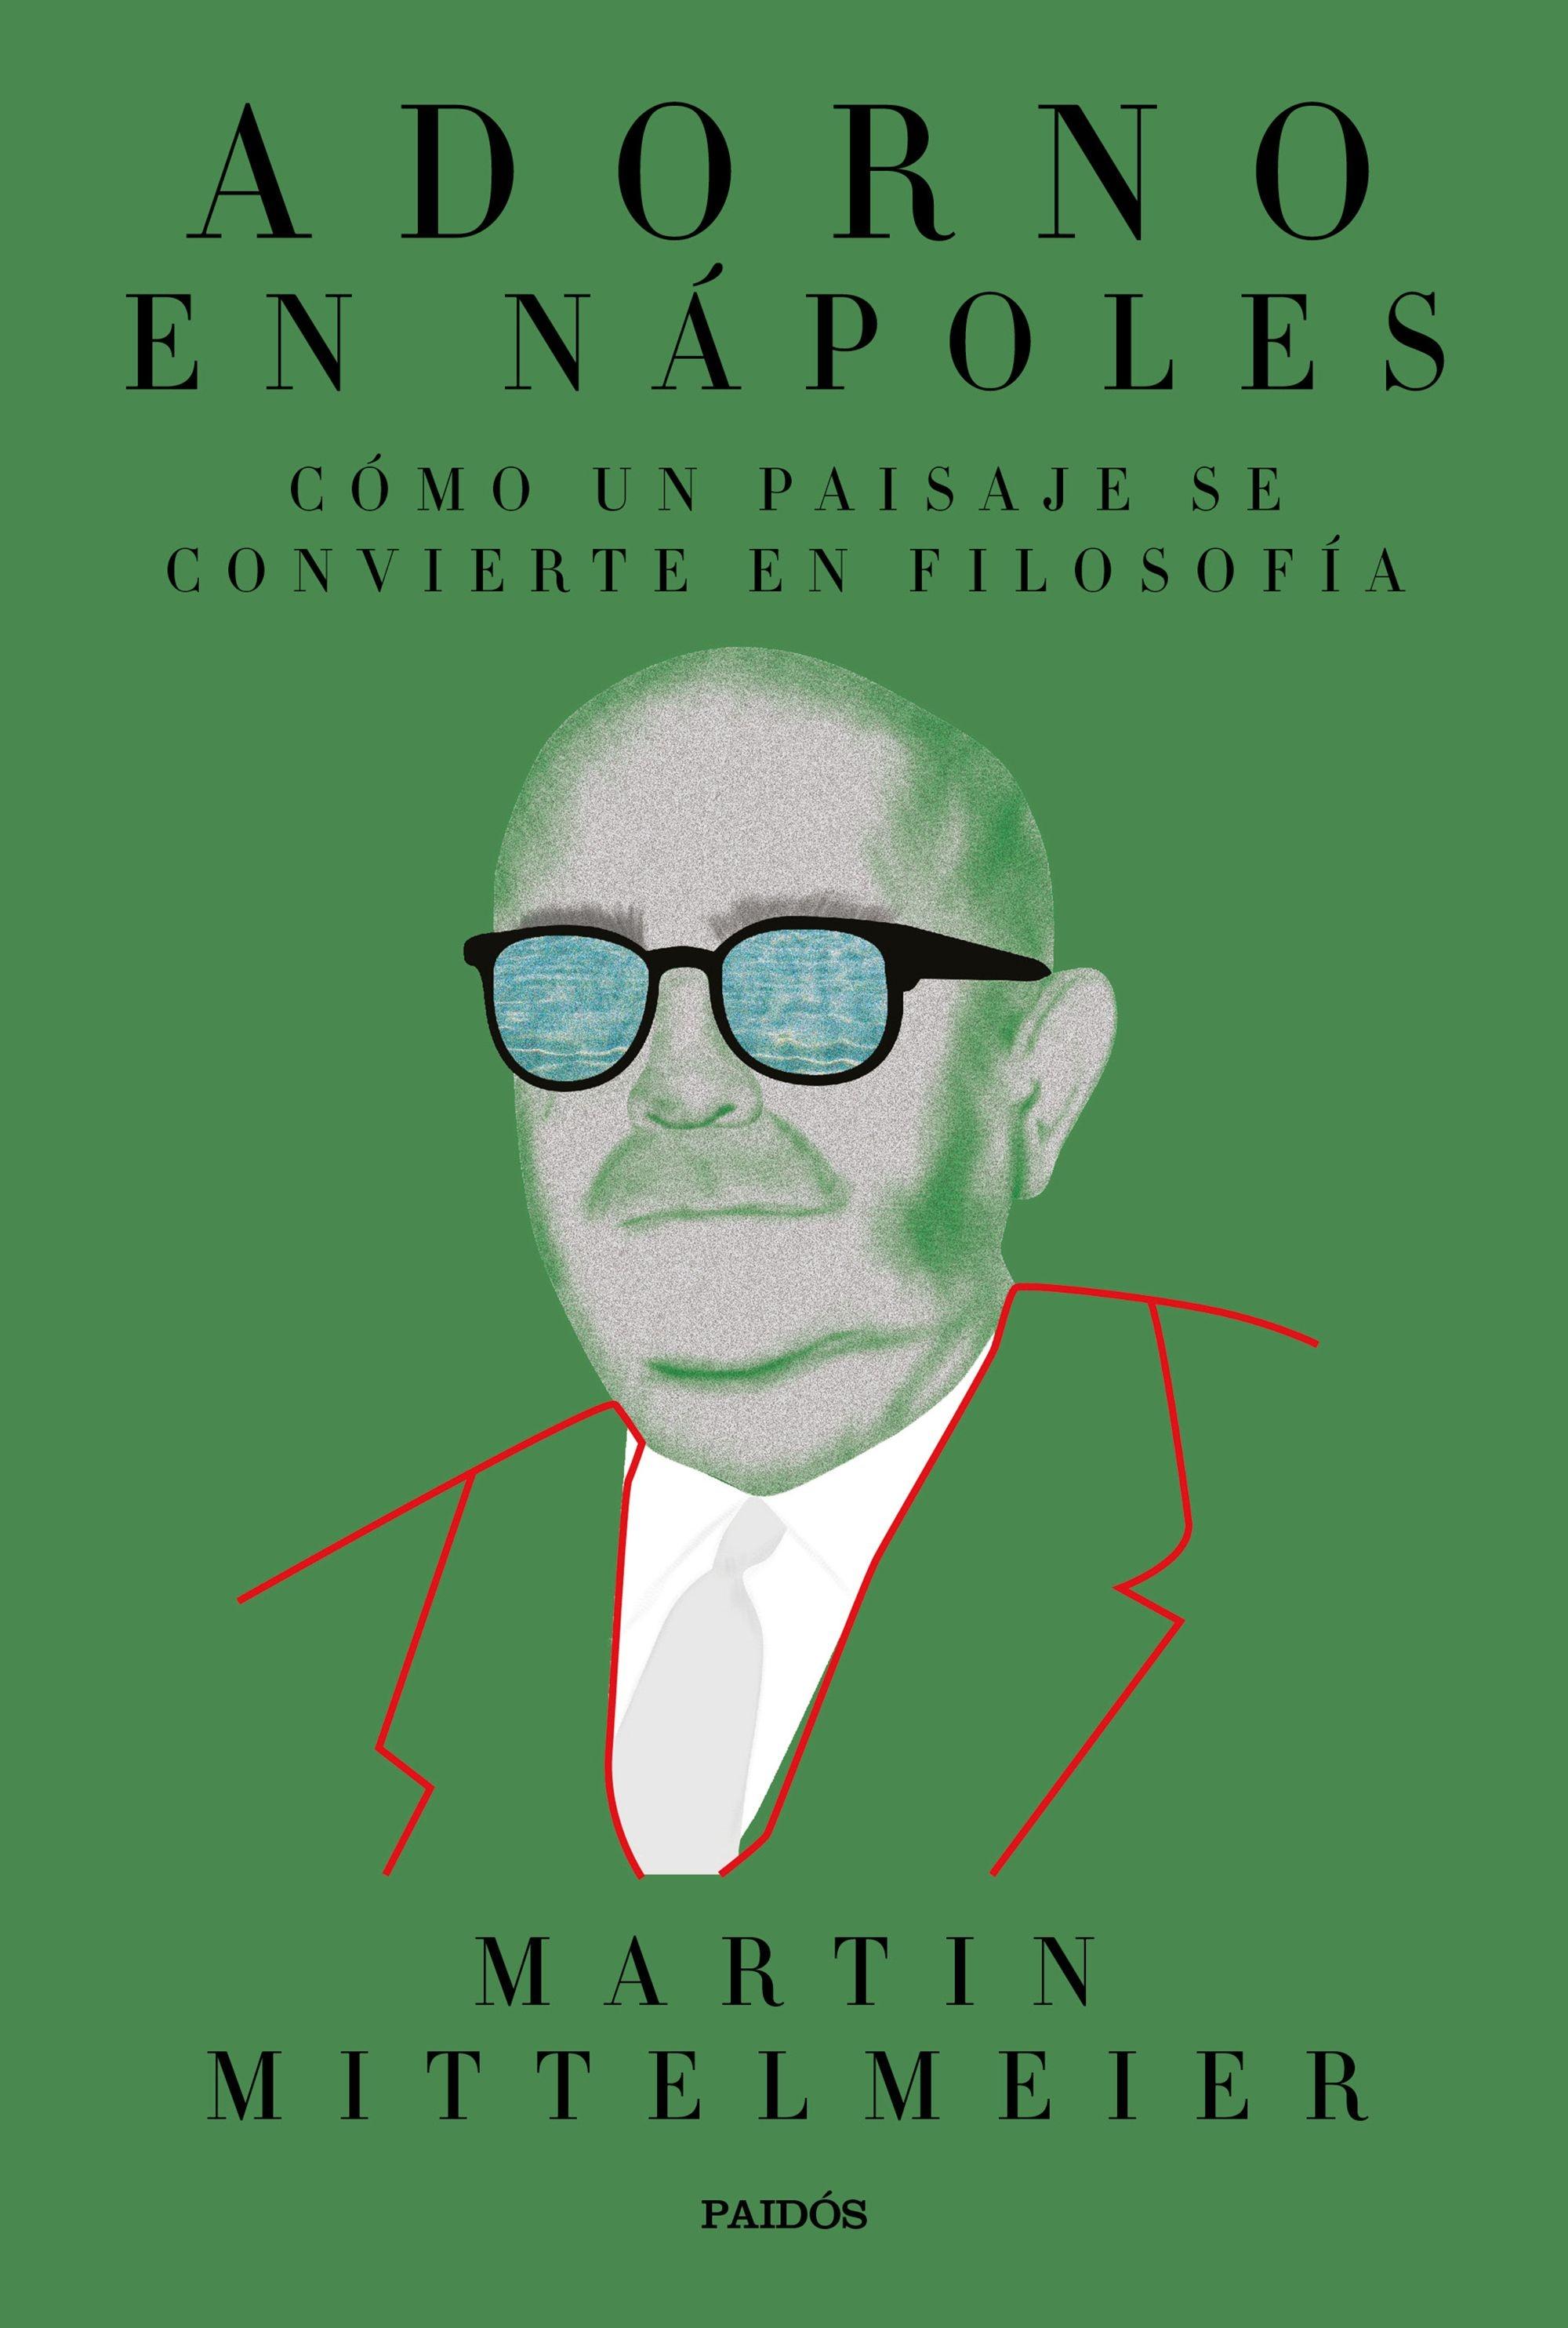 Adorno en Nápoles "Cómo un paisaje se convierte en filosofía". 